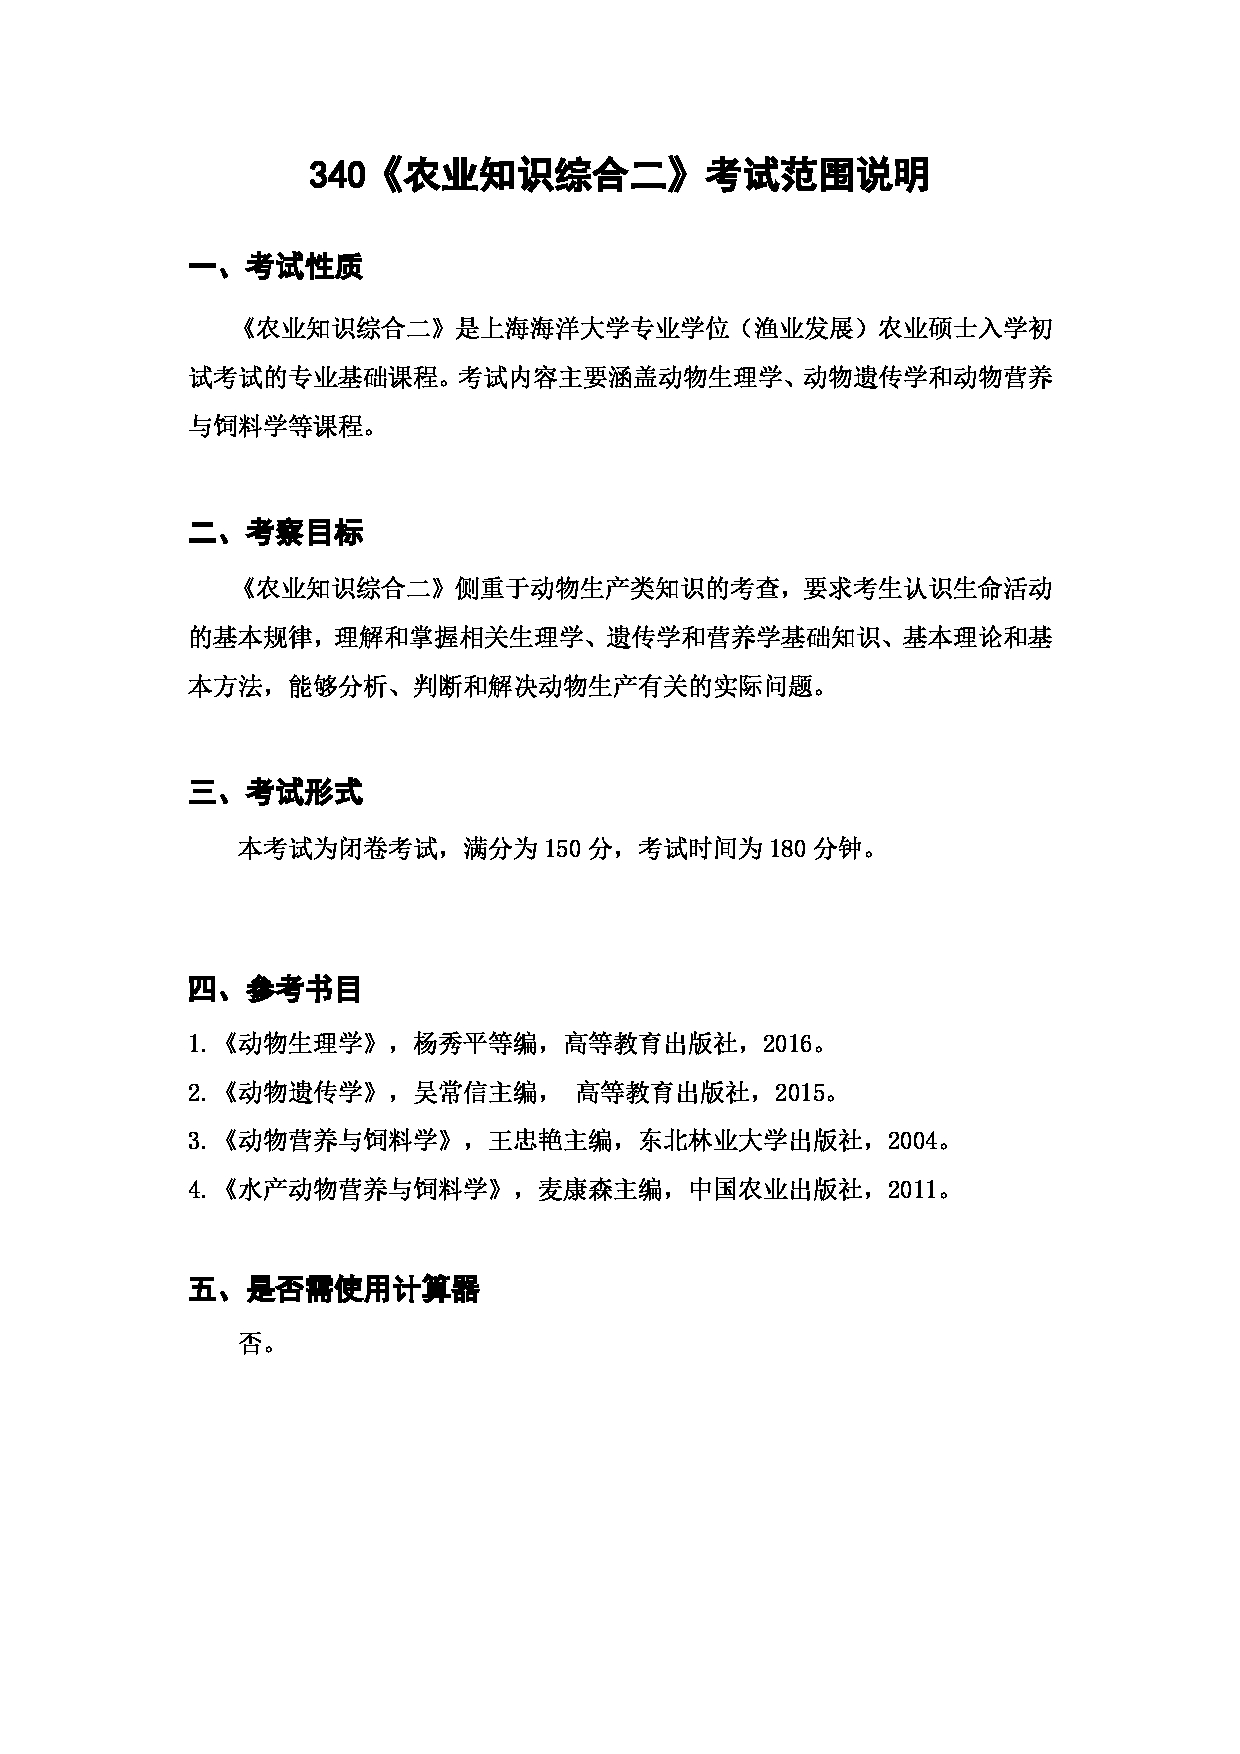 上海海洋大学2023年考研自命题科目 340农业知识综合二》 考试范围第1页